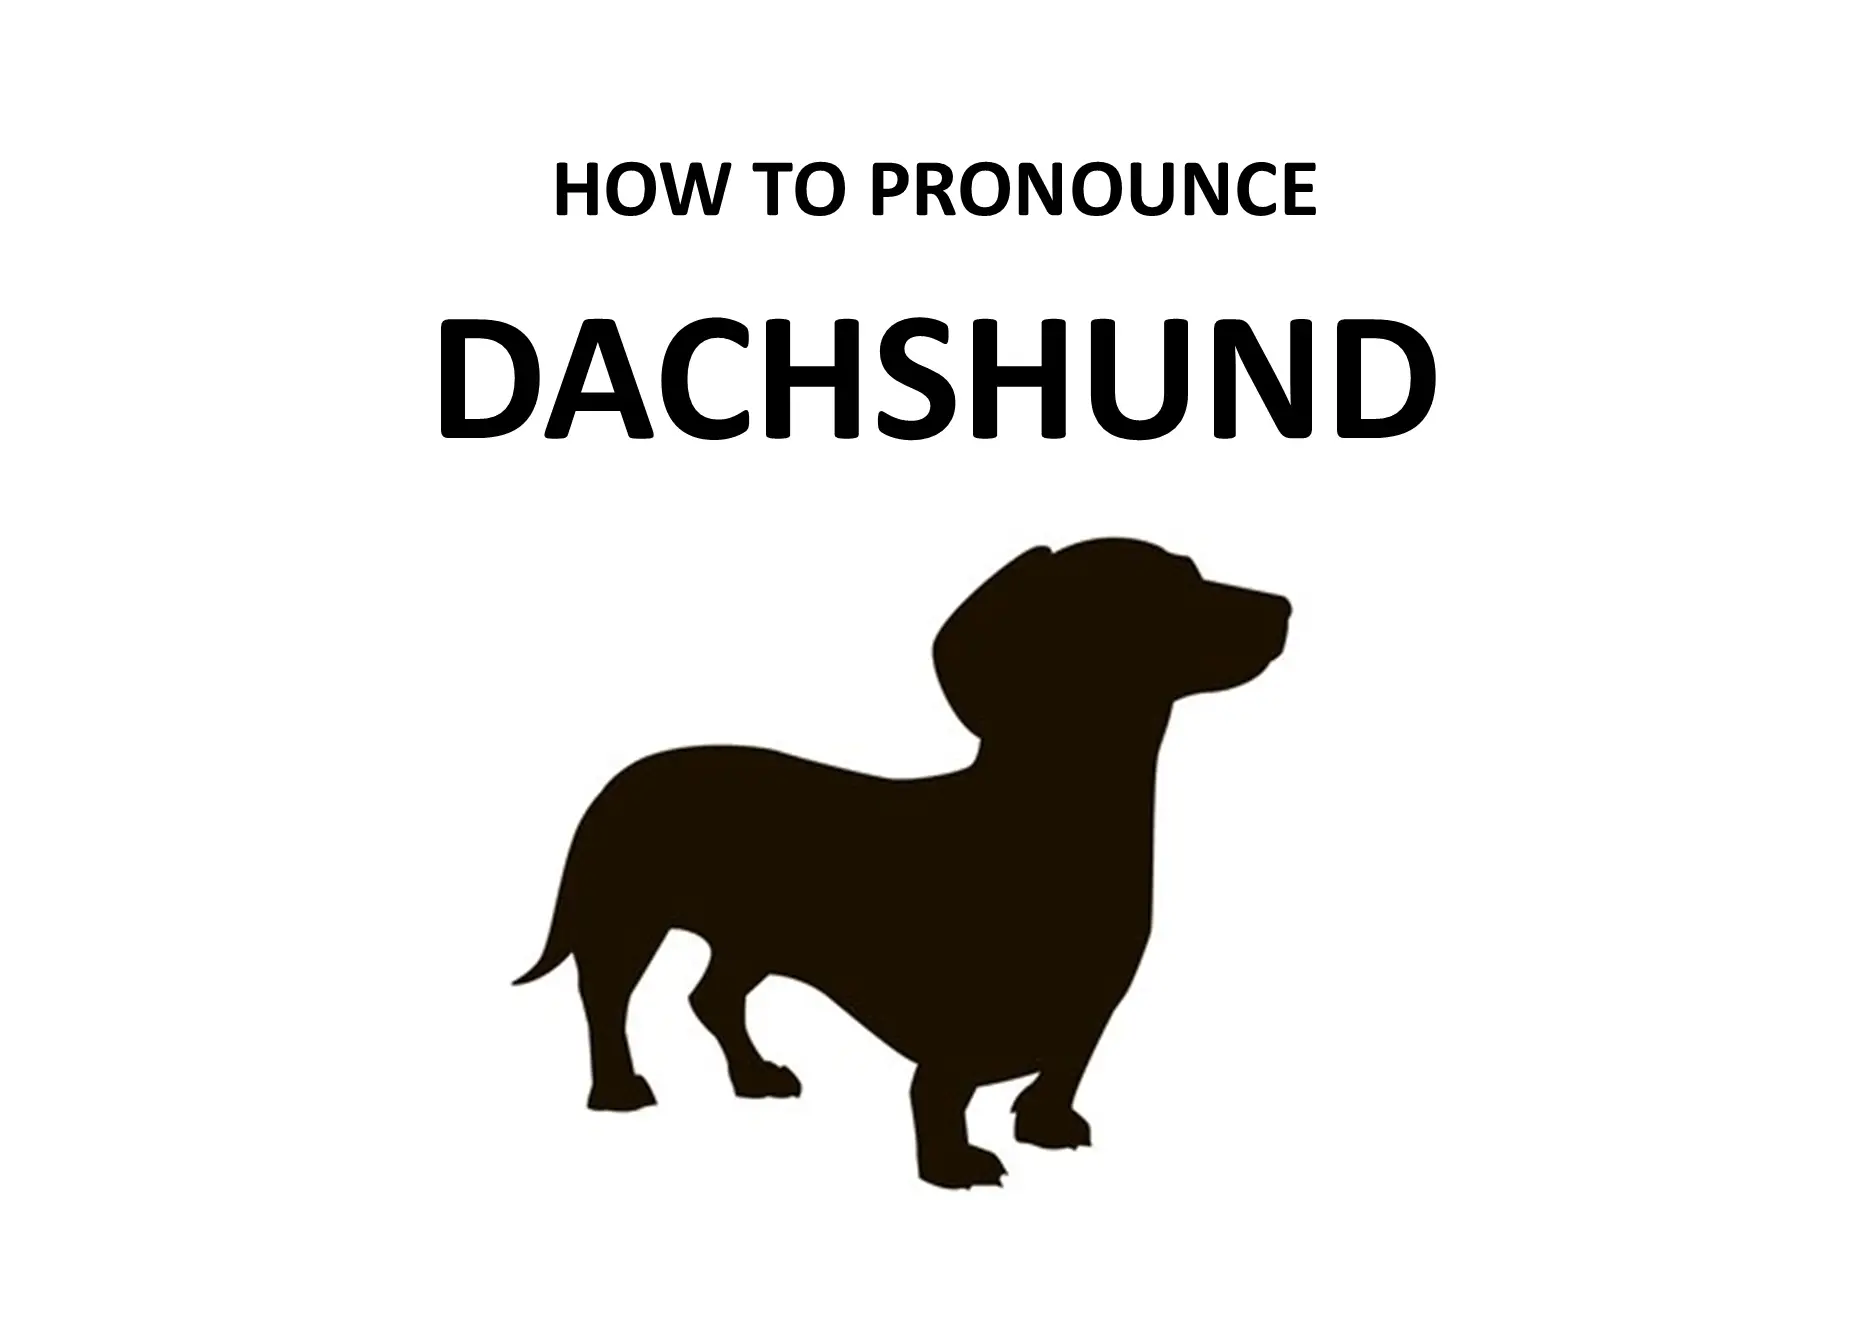 Pronounce Dachshund